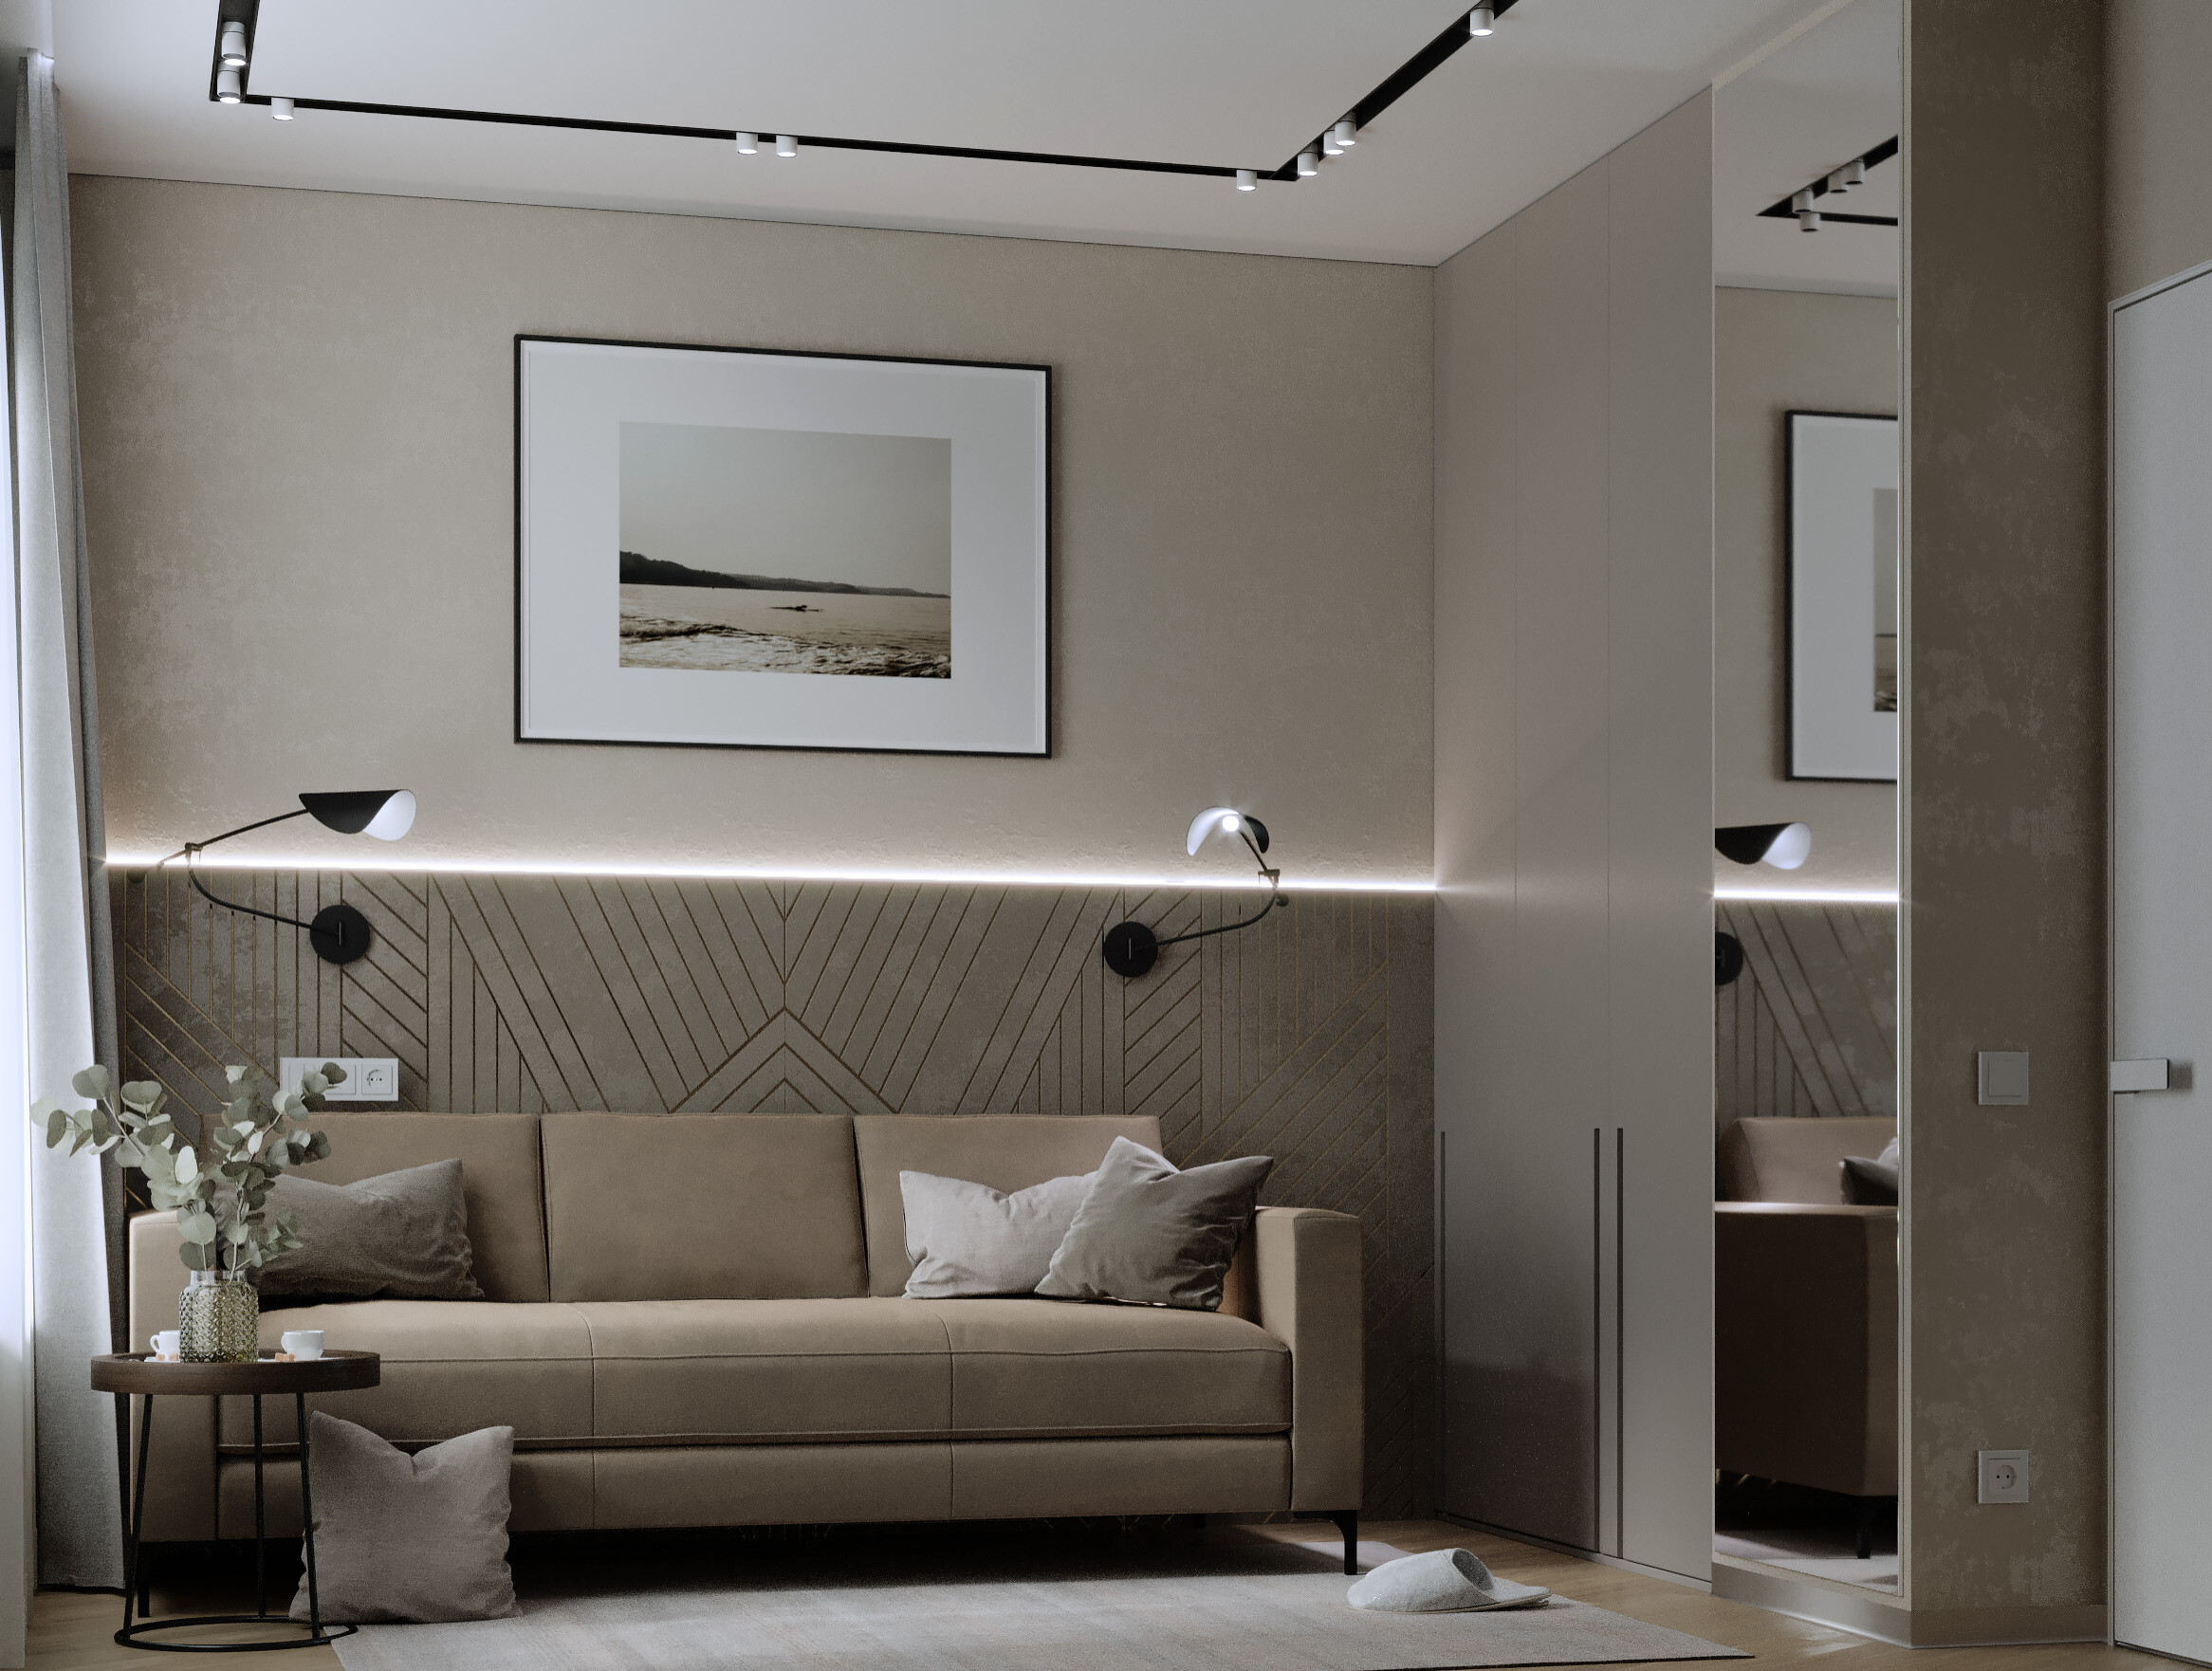 Интерьер с рейками с подсветкой, подсветкой настенной и подсветкой светодиодной в современном стиле